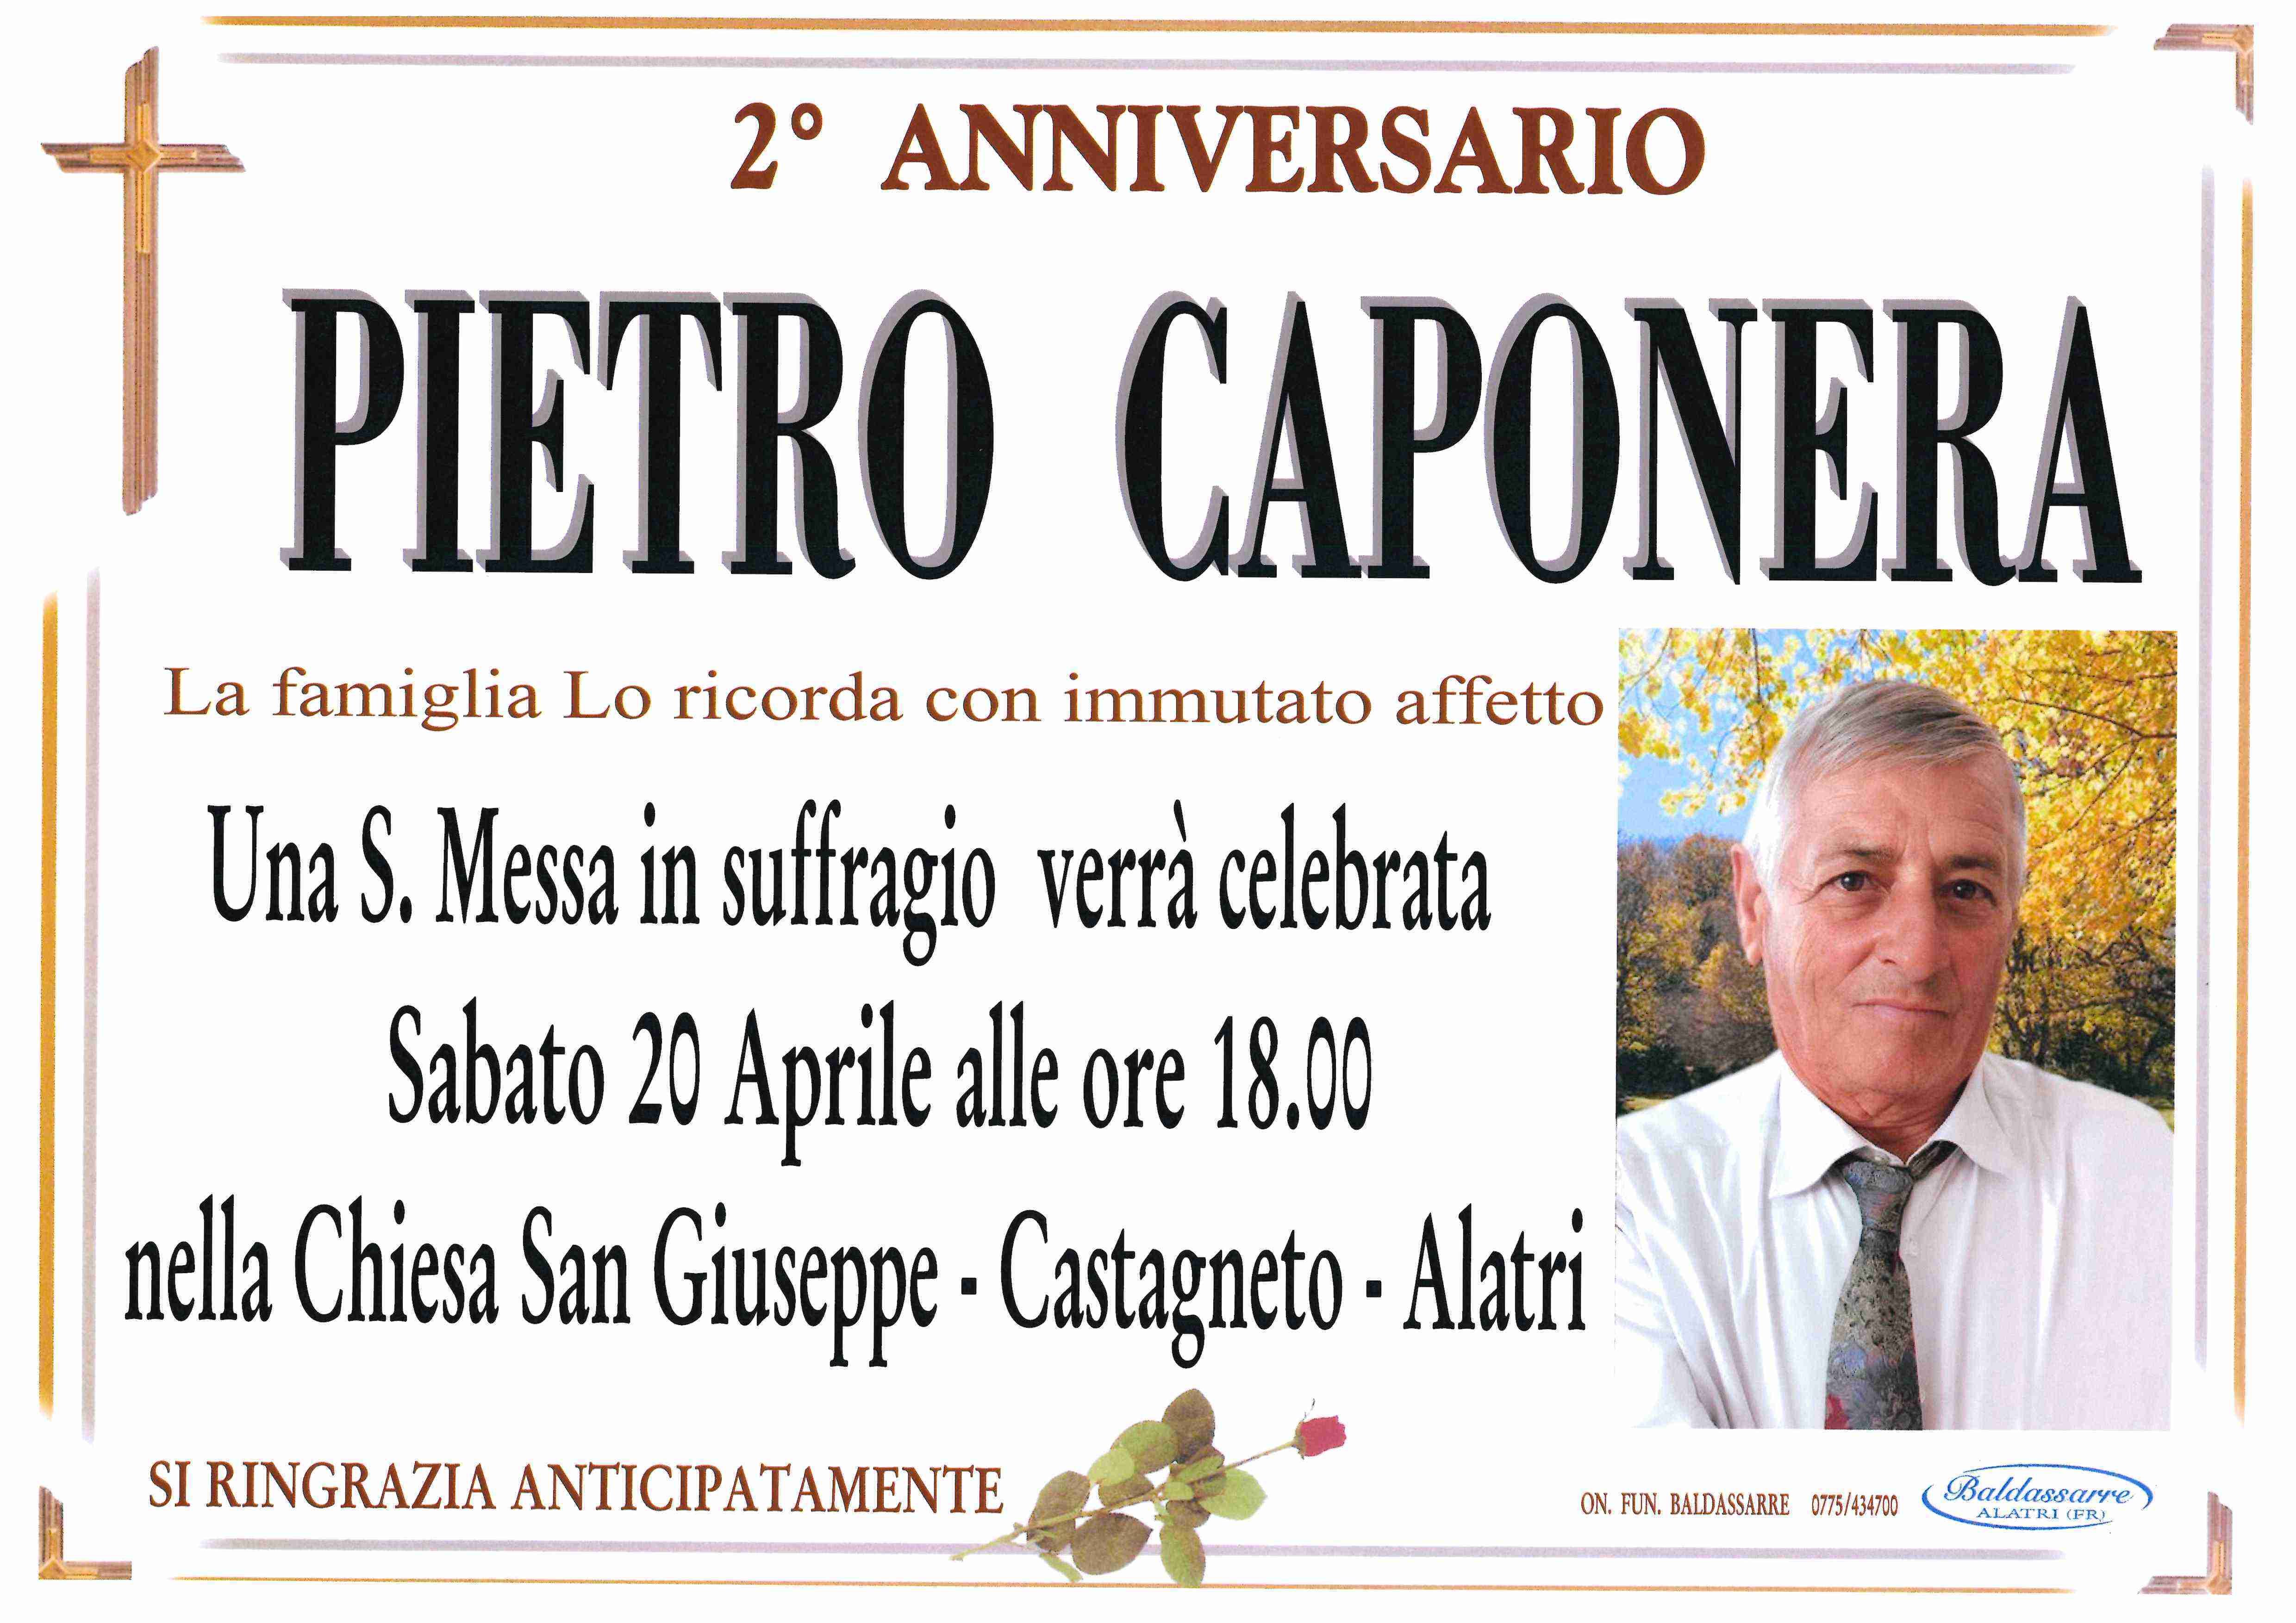 Pietro Caponera